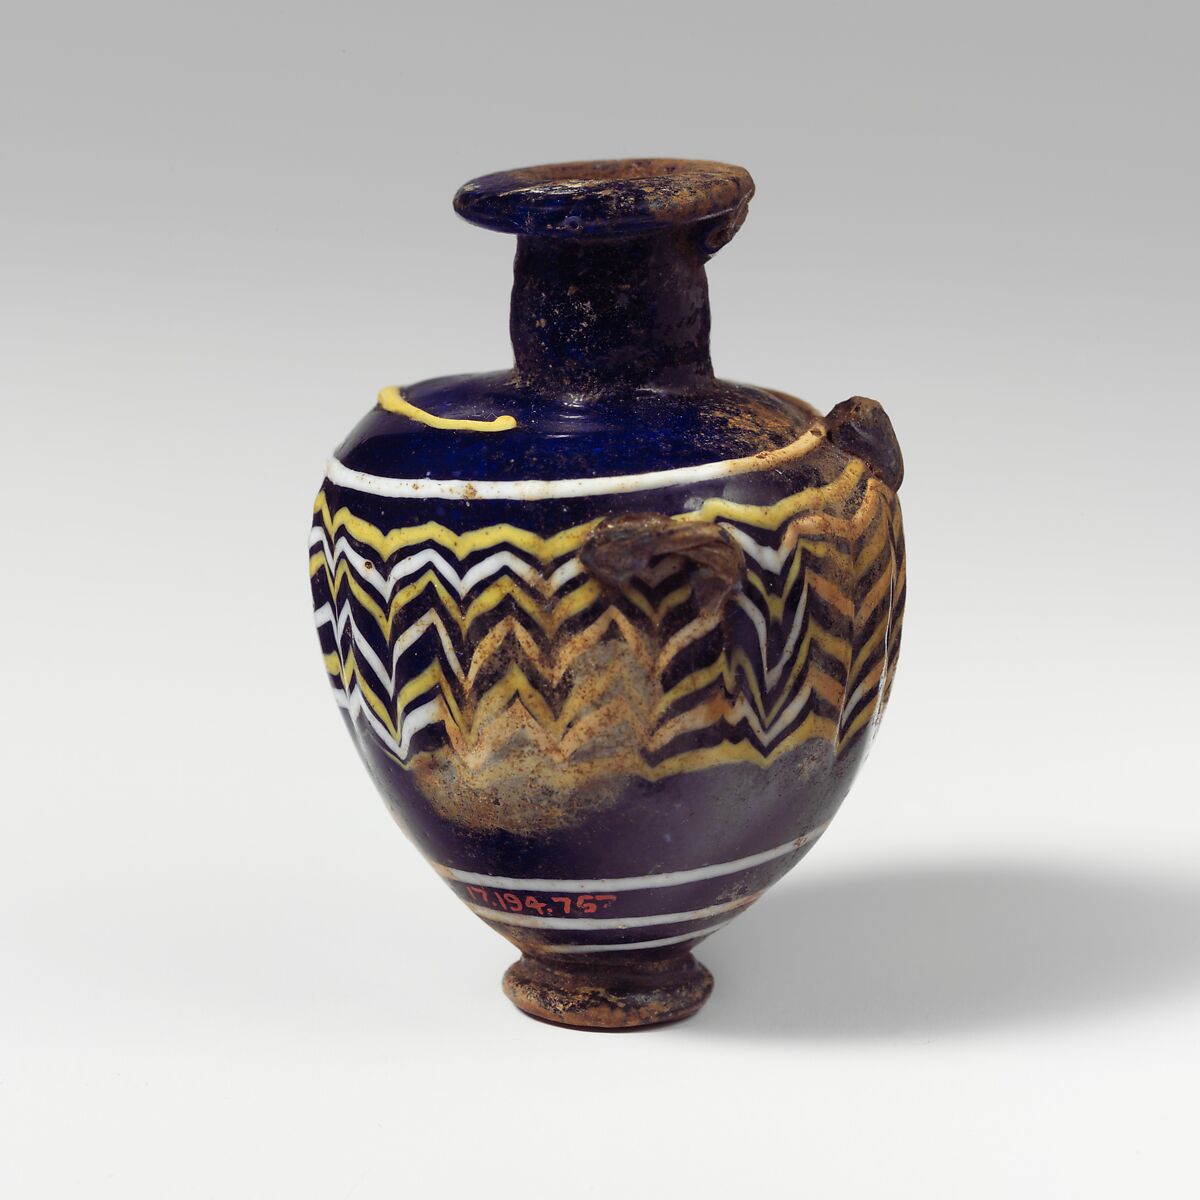 Glass hydriske (perfume bottle), Glass, Greek, Eastern Mediterranean 